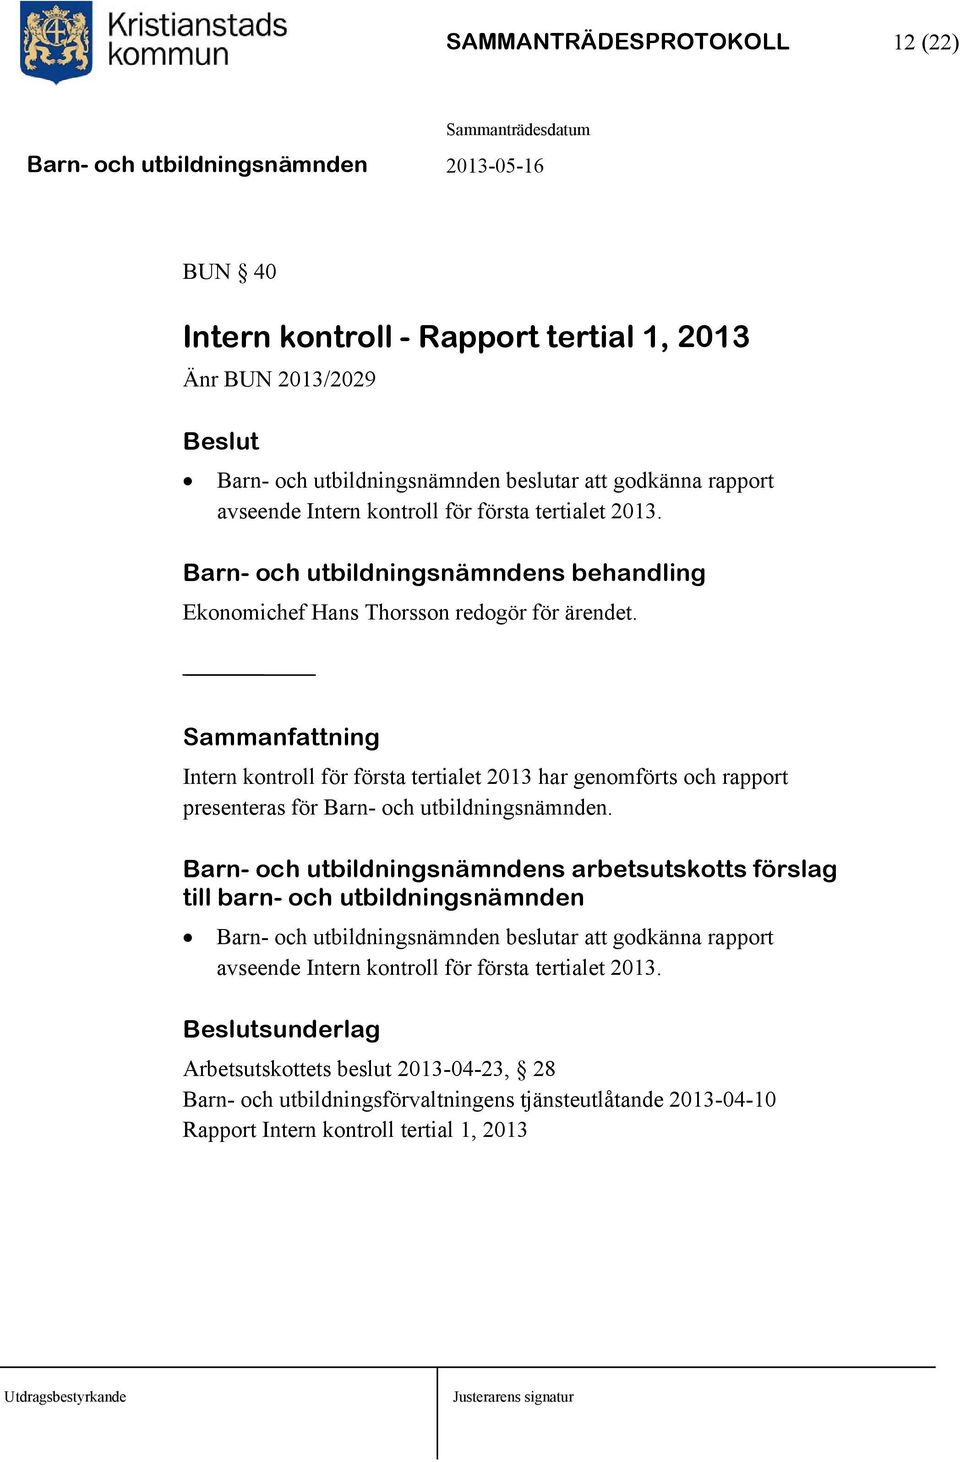 Sammanfattning Intern kontroll för första tertialet 2013 har genomförts och rapport presenteras för Barn- och utbildningsnämnden.